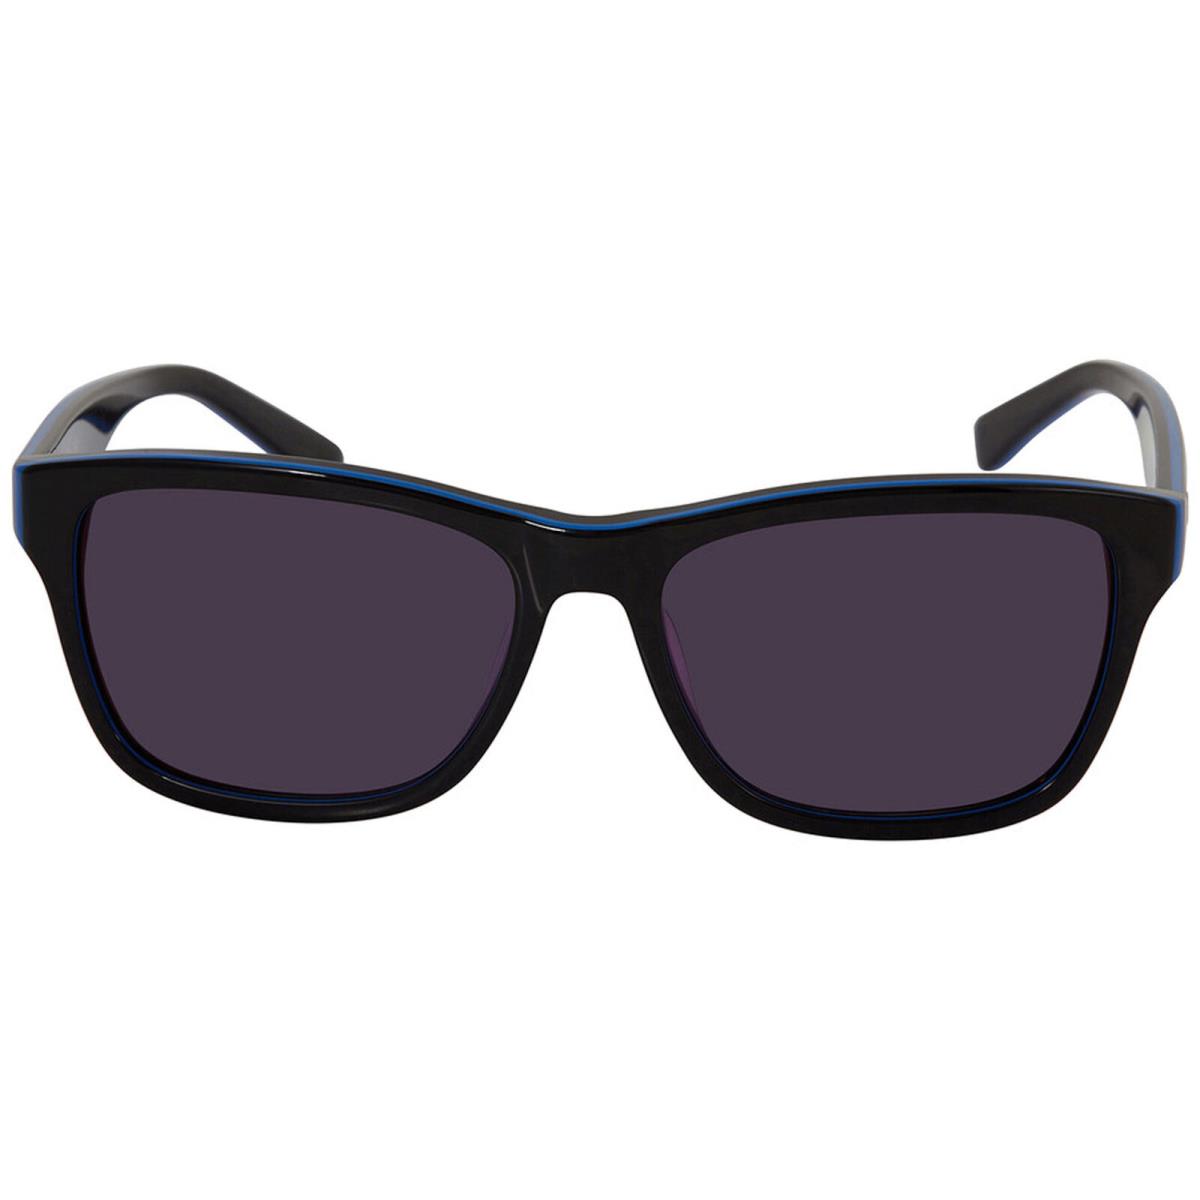 Lacoste Unisex Sunglasses Purple Lens Black and Blue Acetate Frame L683S 006